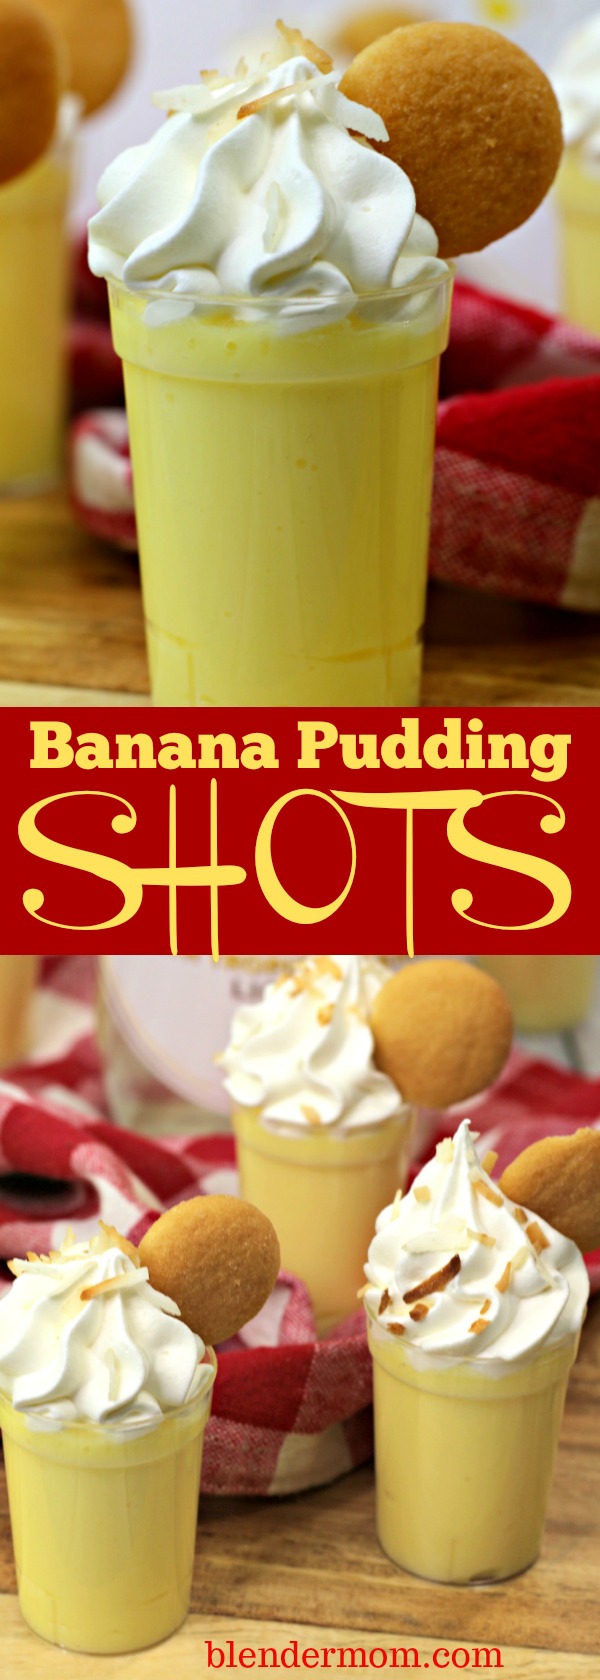 banana pudding shots